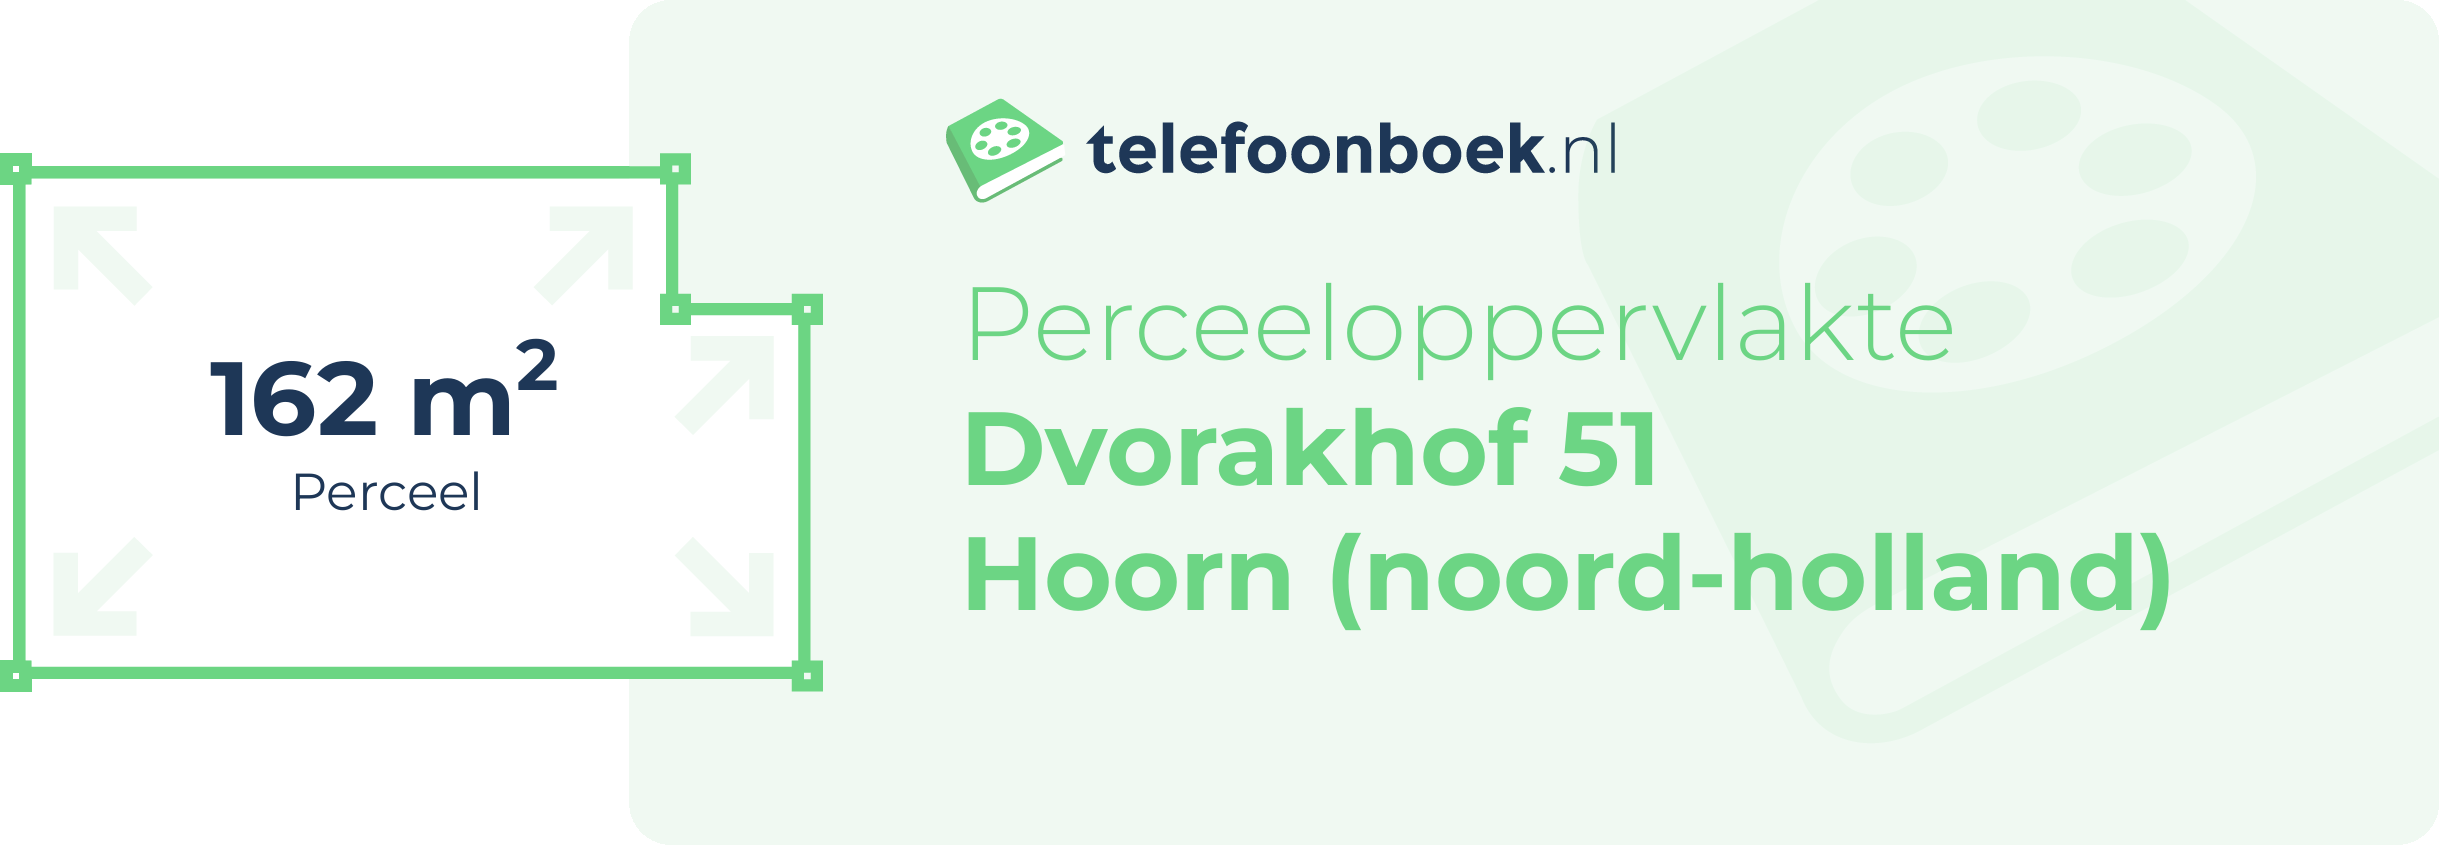 Perceeloppervlakte Dvorakhof 51 Hoorn (Noord-Holland)